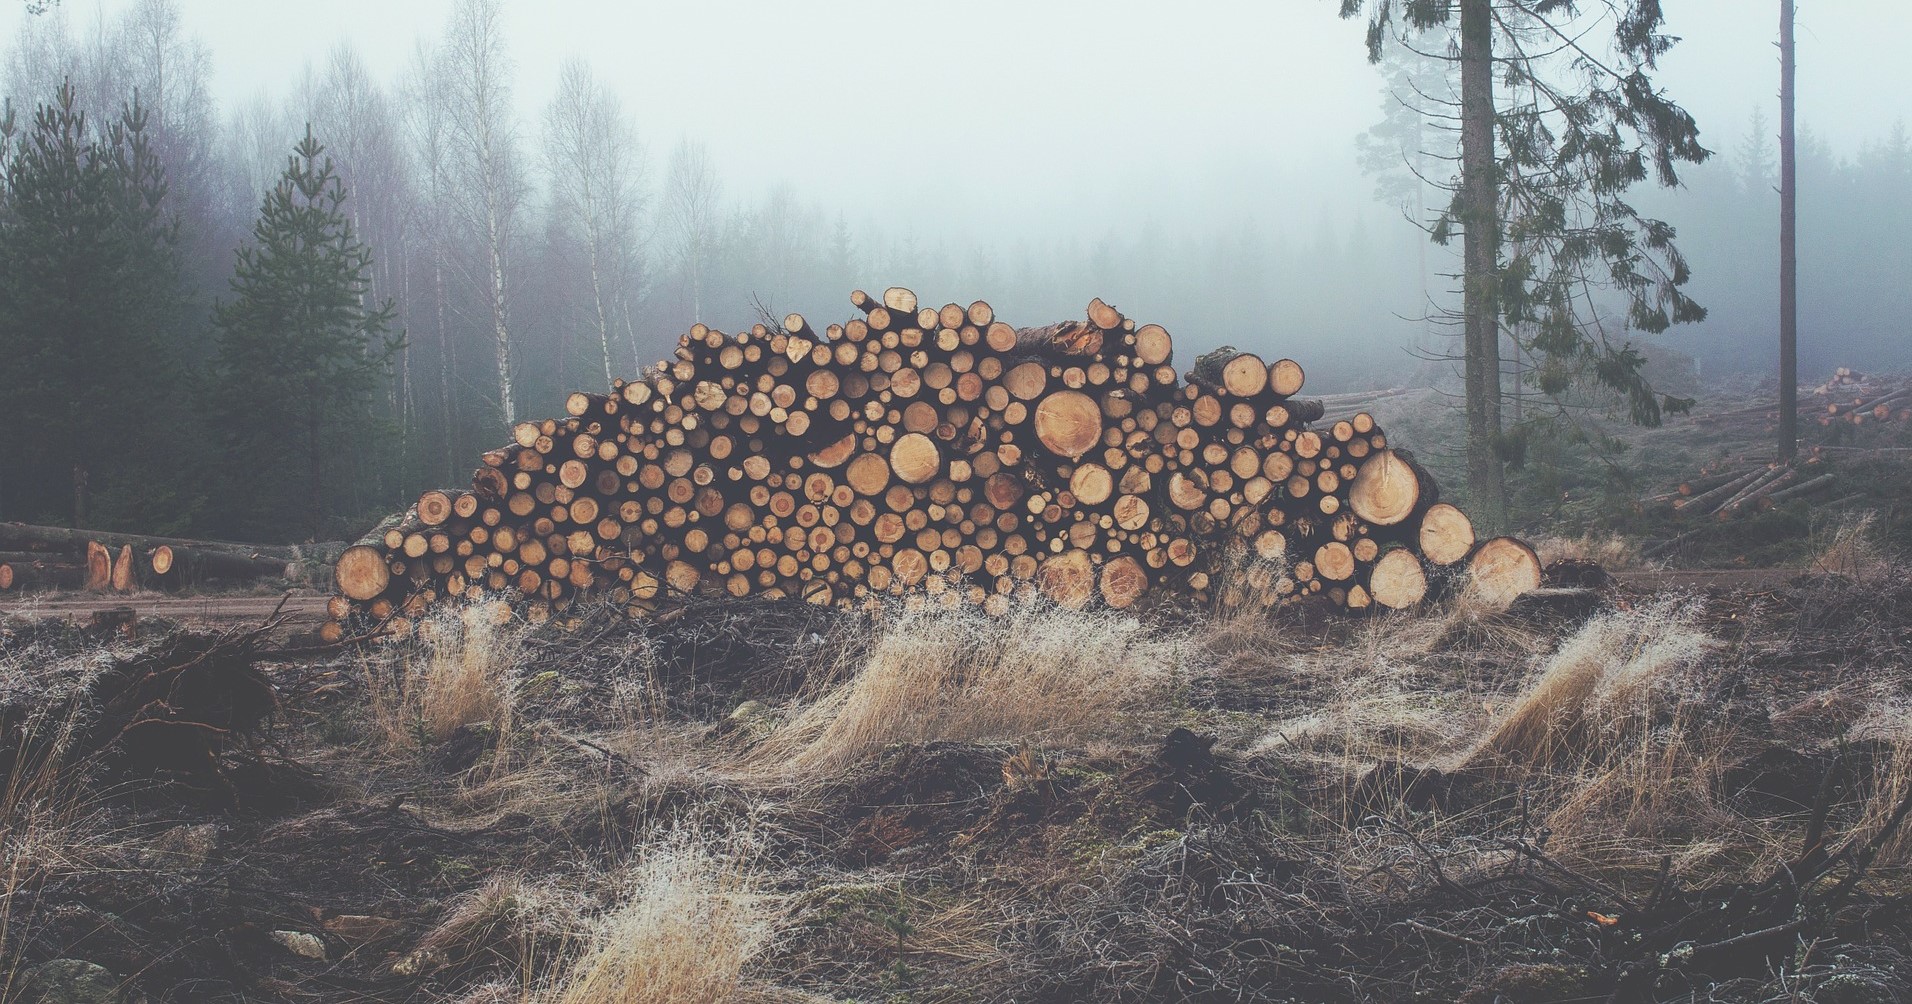 logging